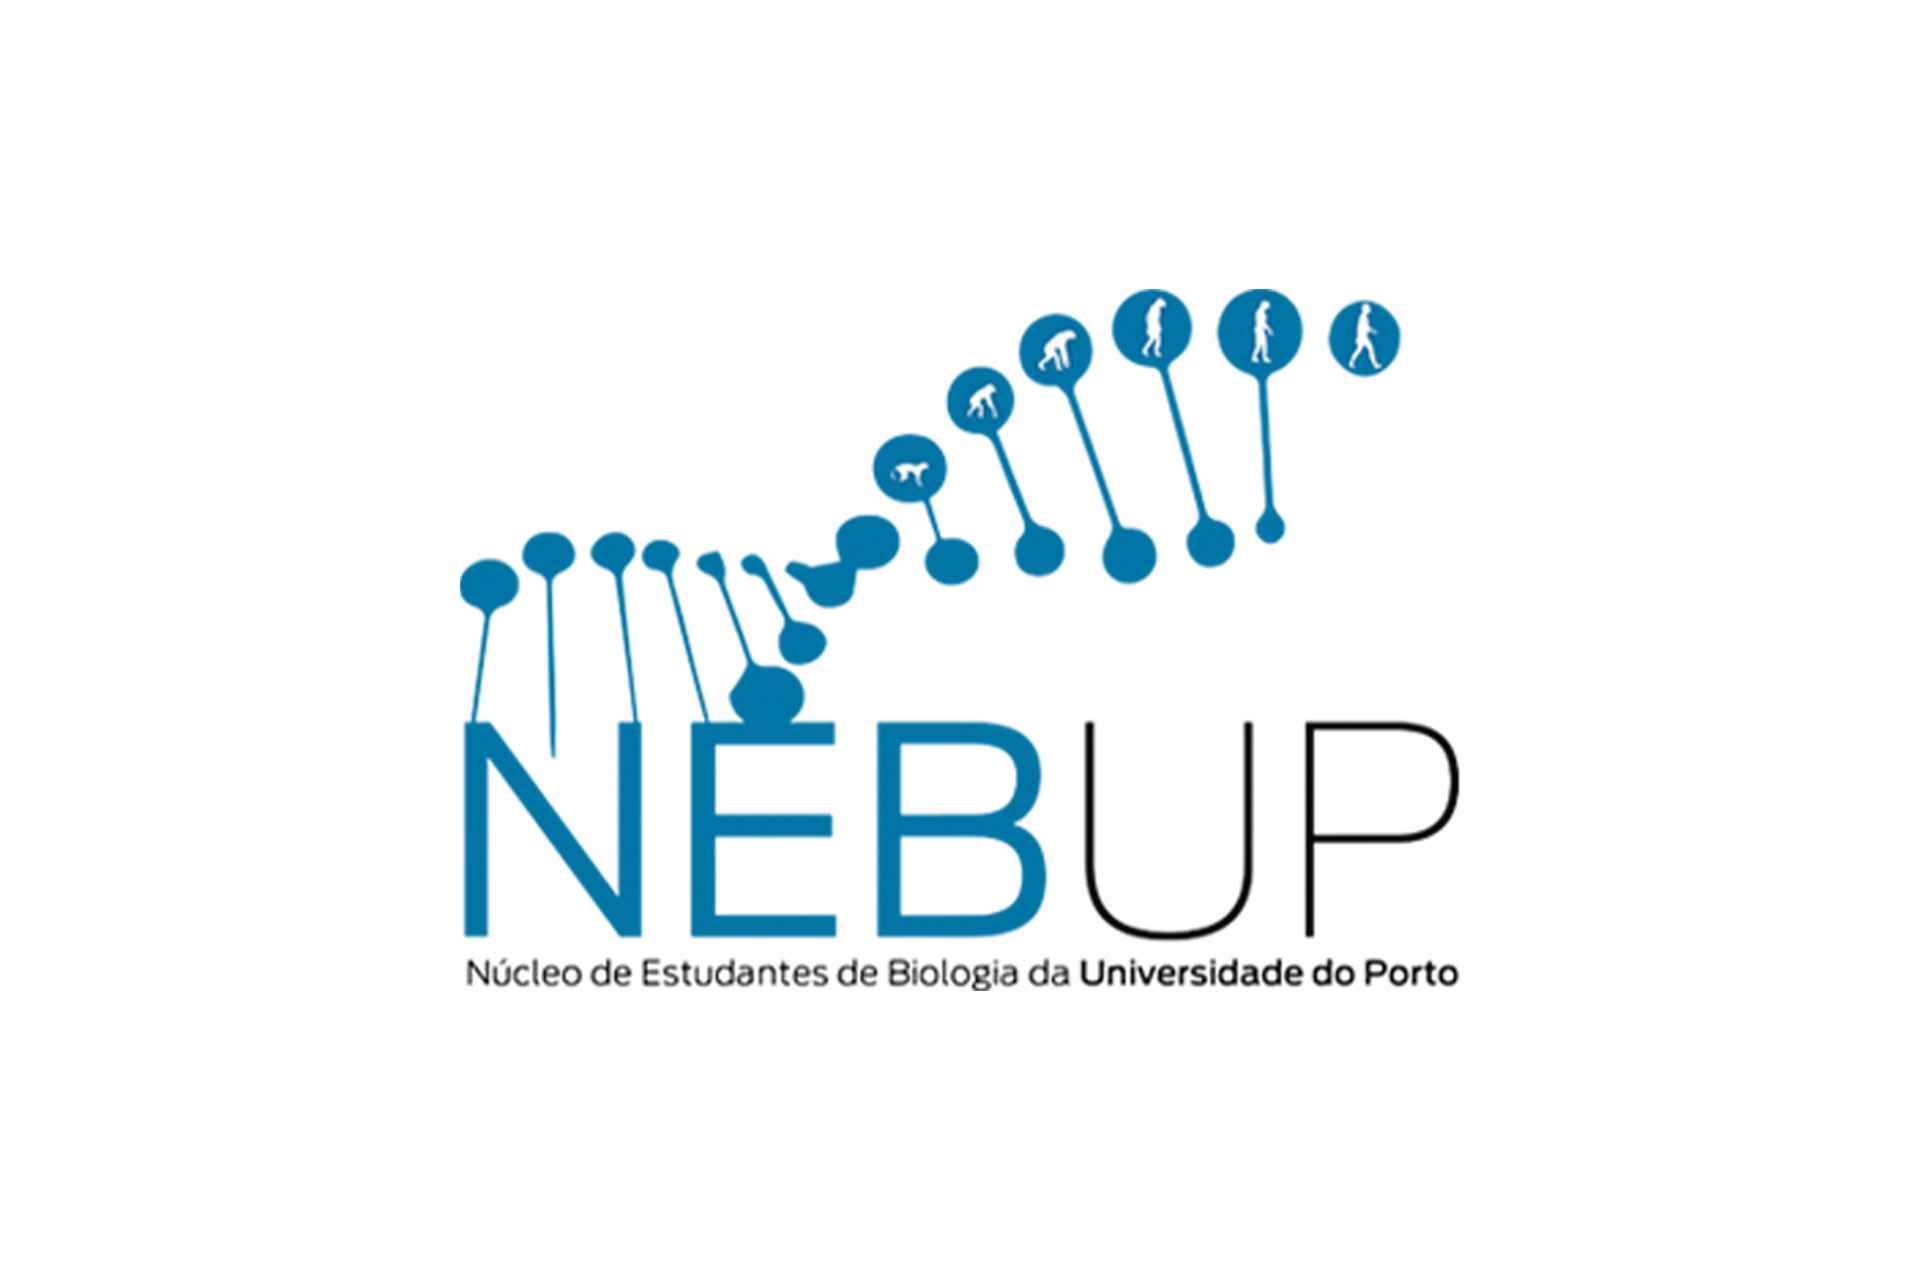 NEBUP Student Center logo